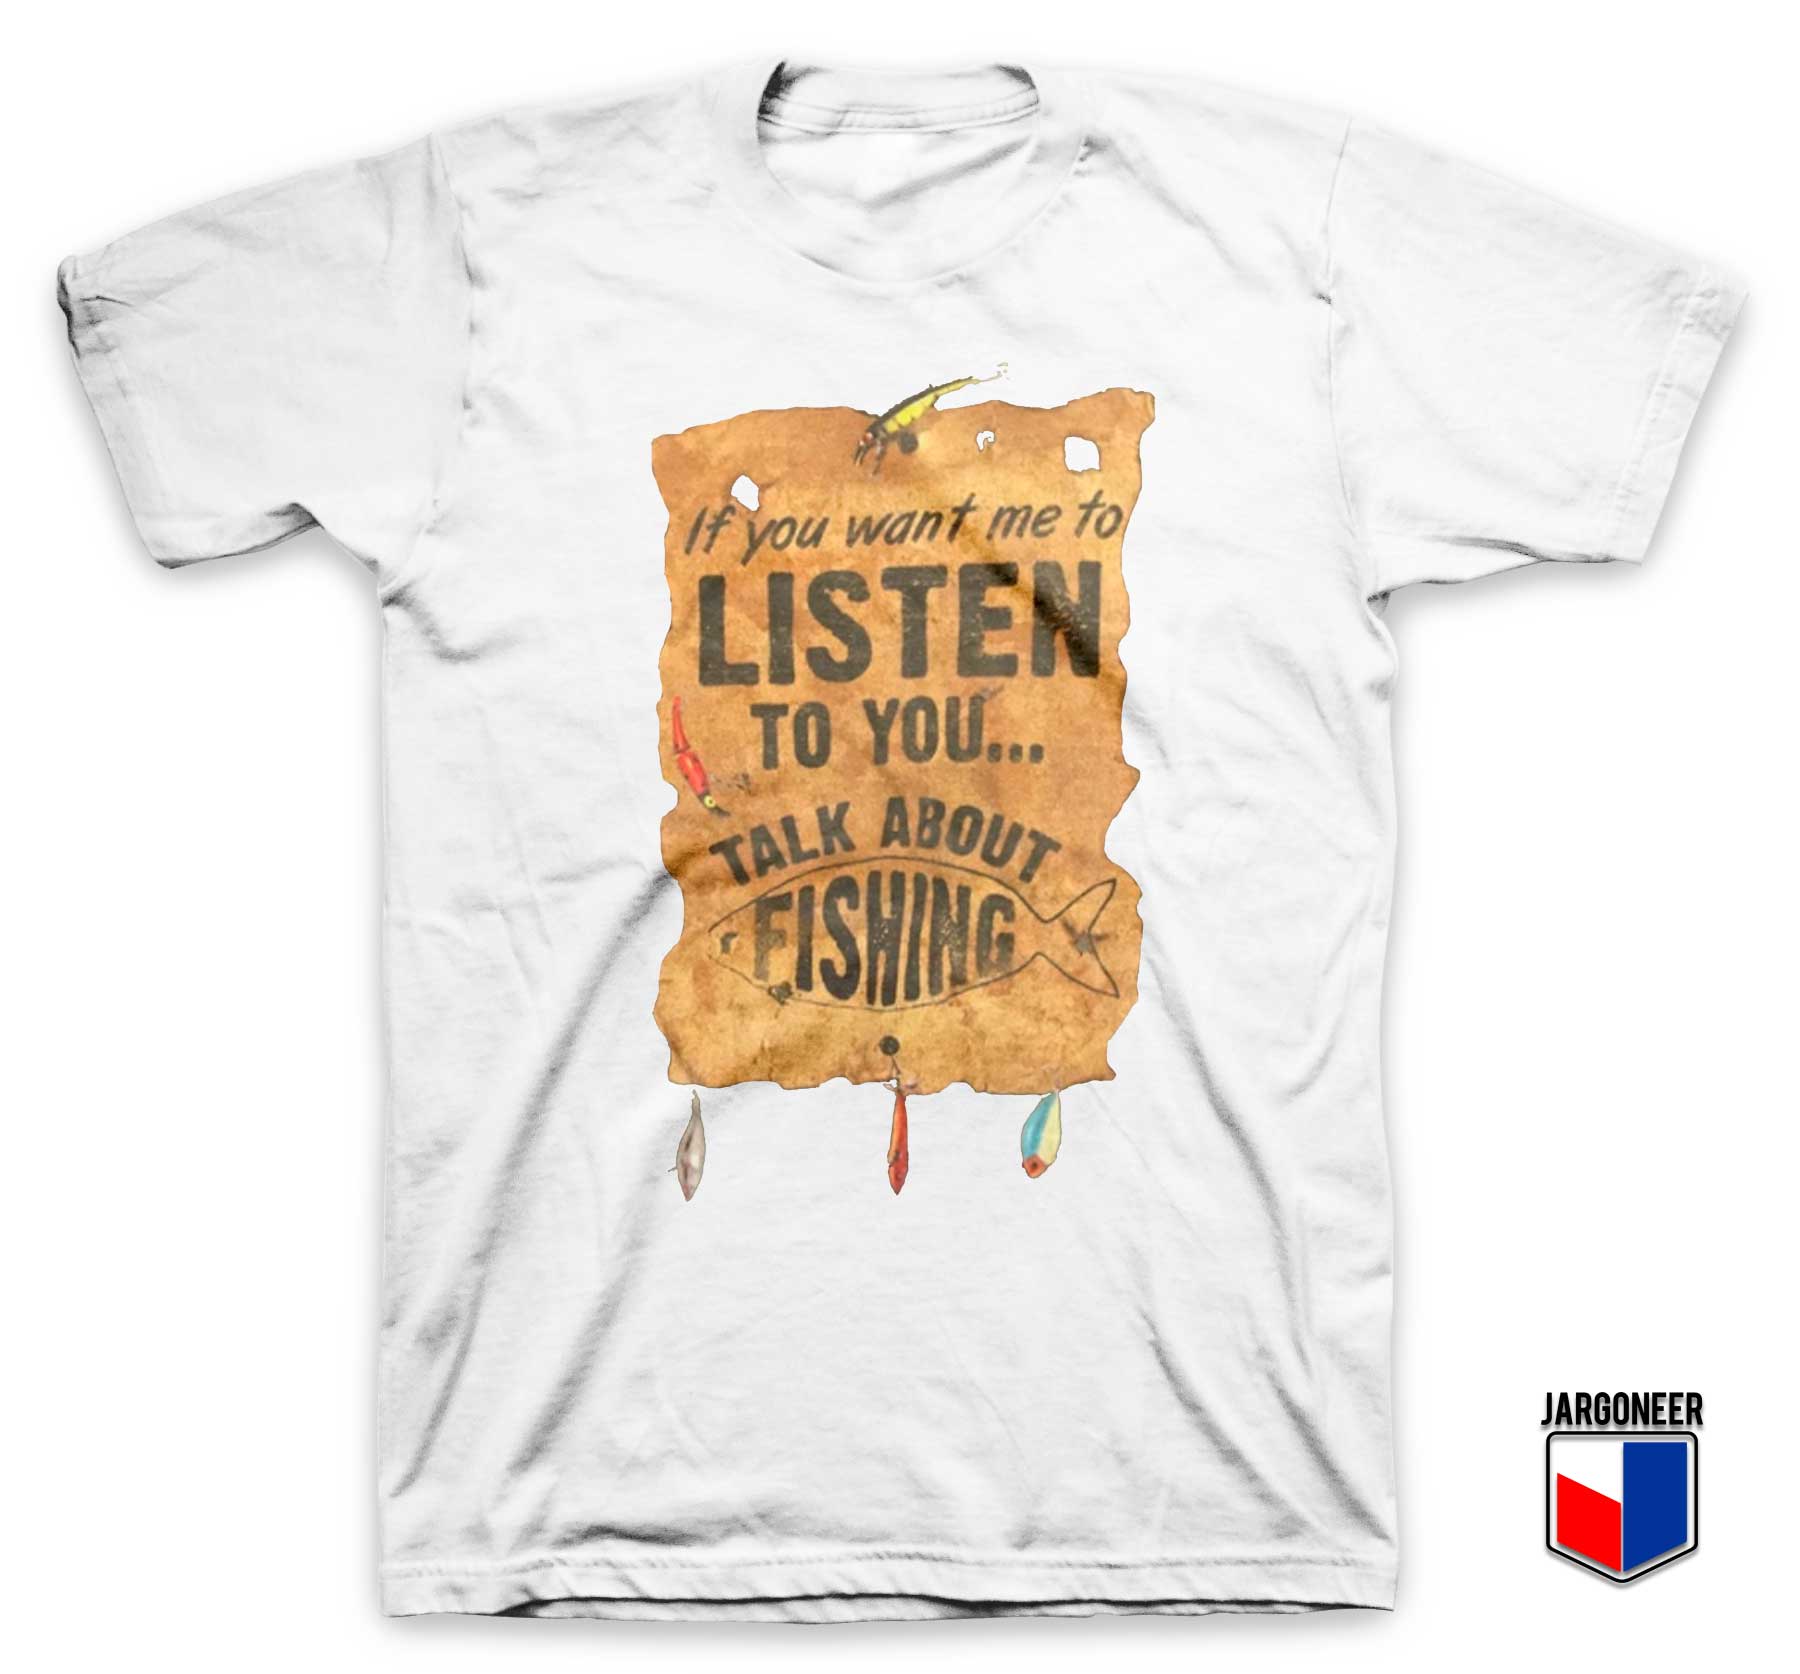 Listen Talk About Fishing T Shirt - Shop Unique Graphic Cool Shirt Designs